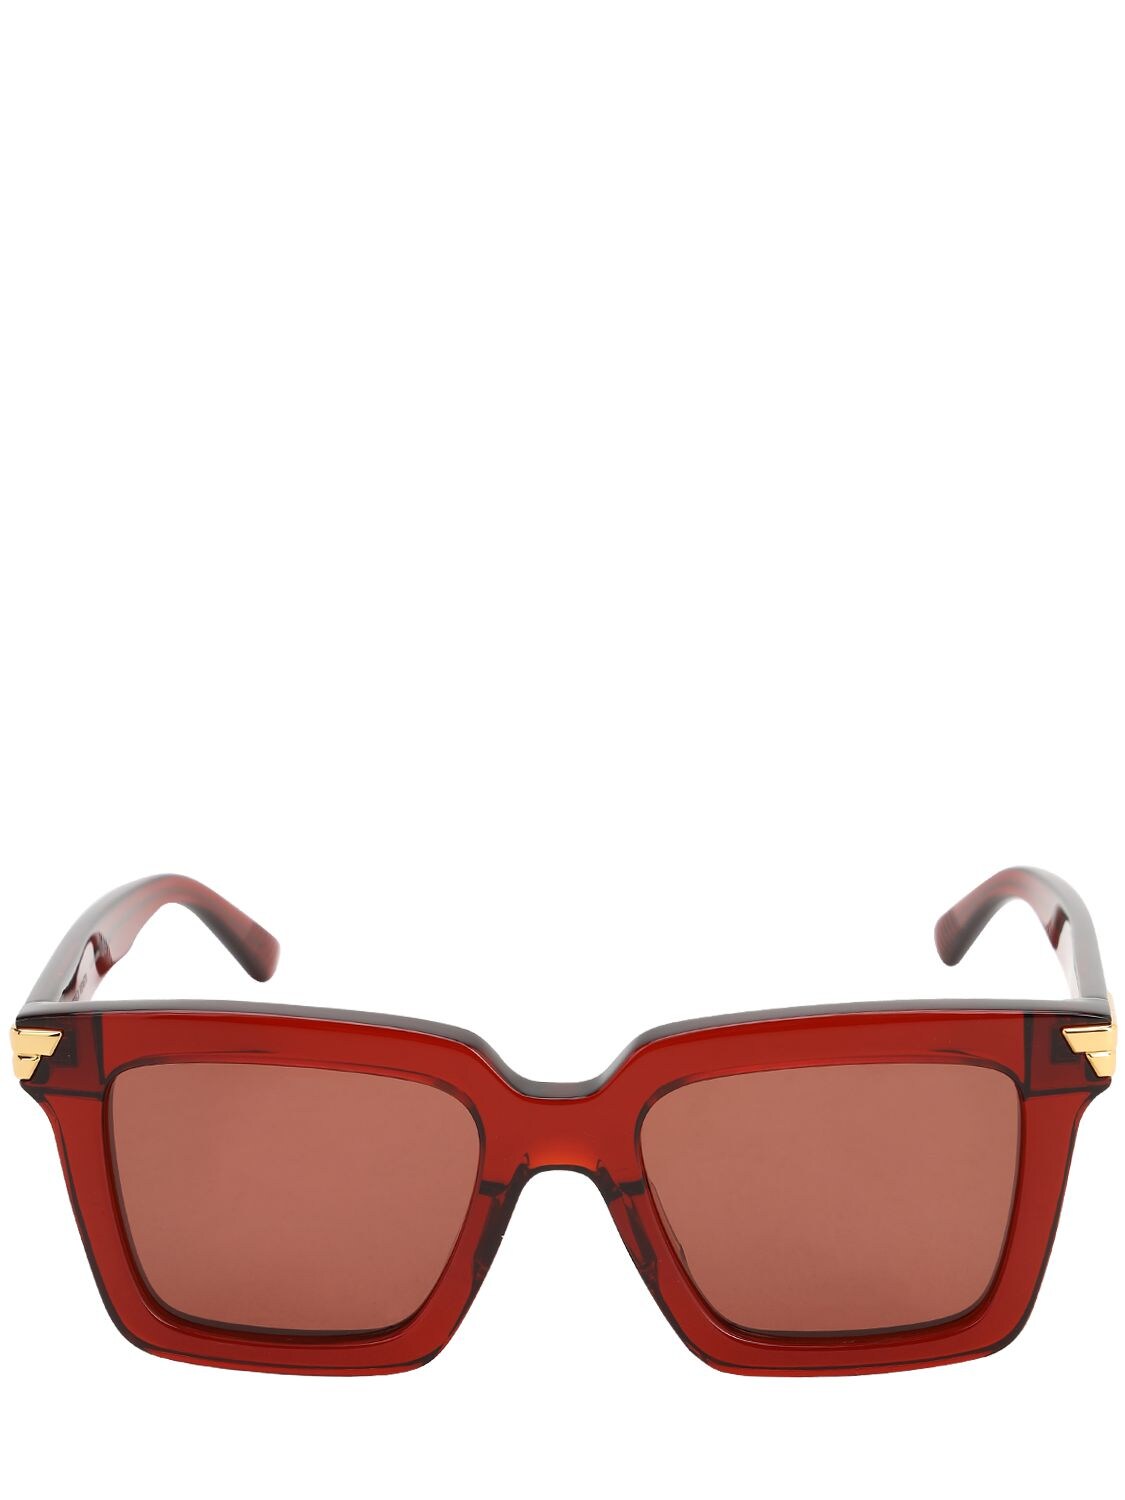 Bottega Veneta Btv1015 Squared Acetate Sunglasses In Bordeaux,red